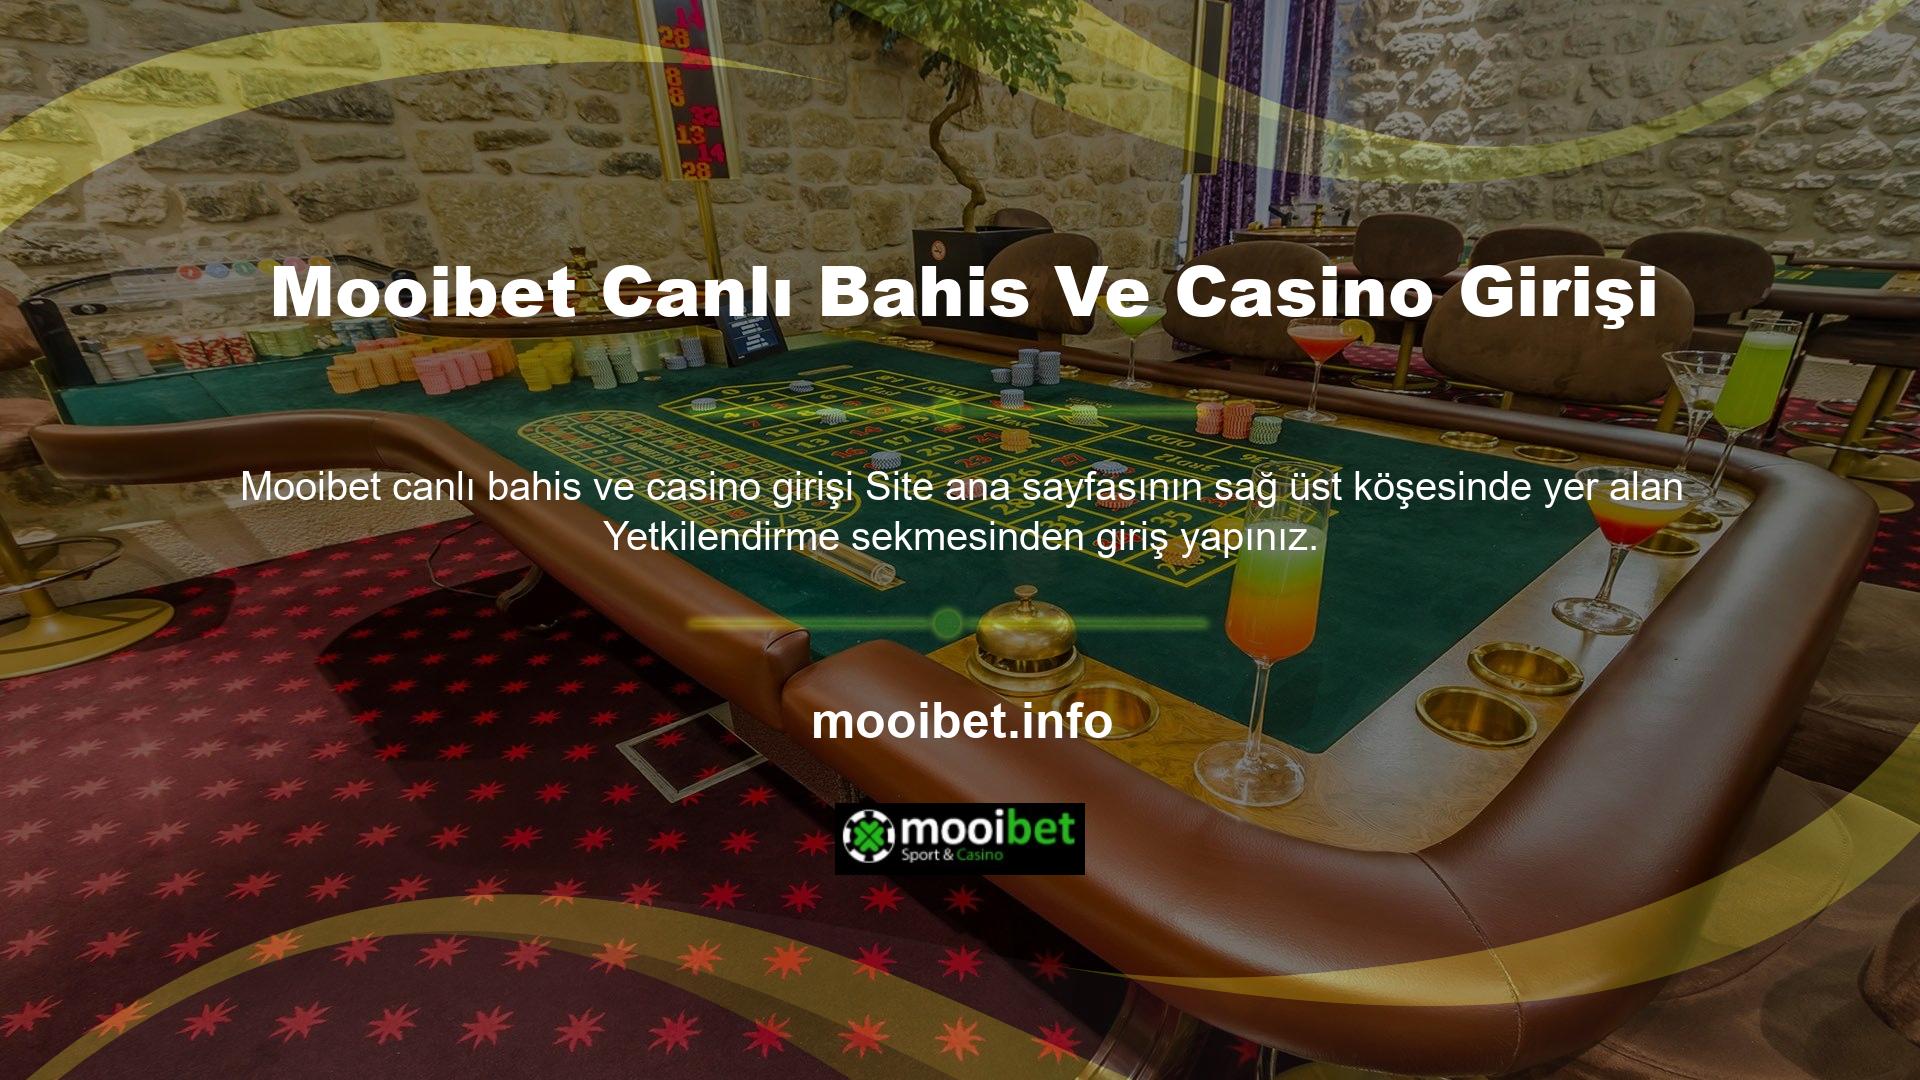 Mooibet canlı bahis ve casino girişi